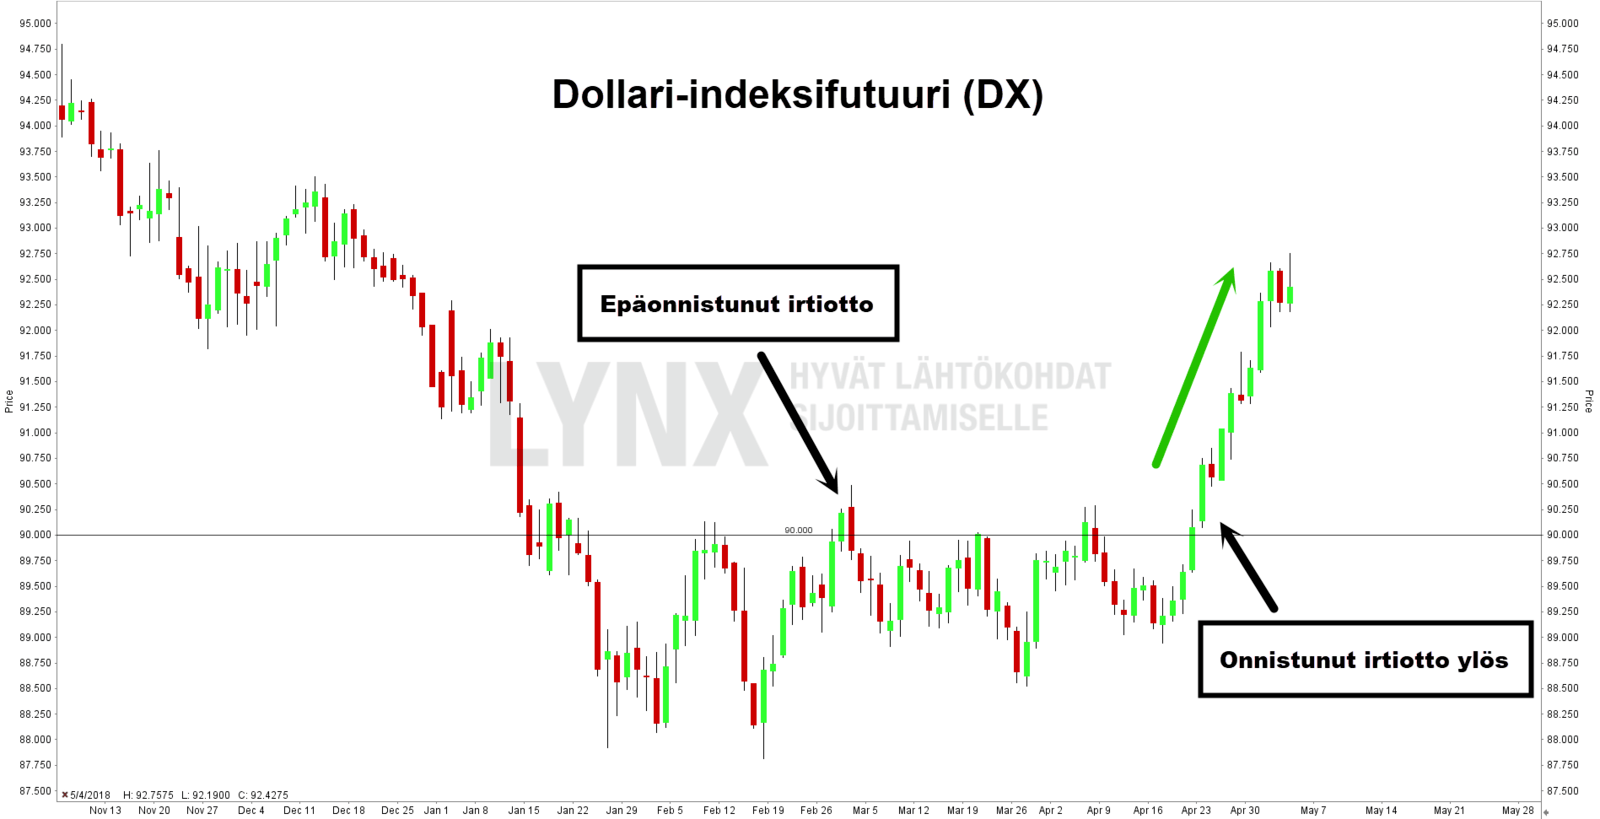 Epäonnistunut irtiotto Dollari-indeksissä